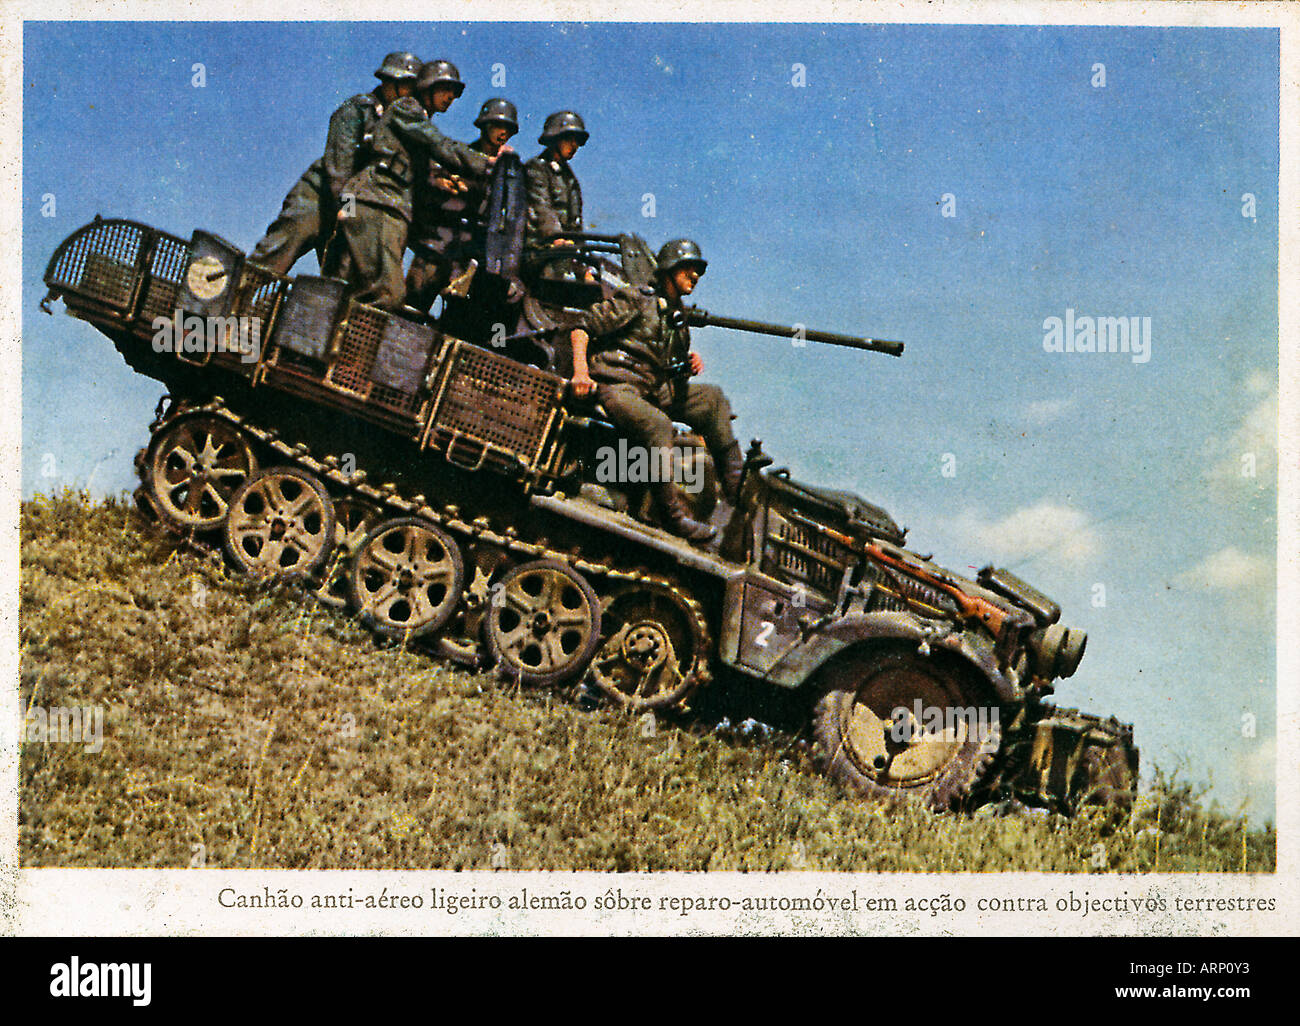 Zugkraftwagon carte postale allemande de la moitié suivi personnel carrier équipé d un canon anti aircraft de descendre une pente Banque D'Images